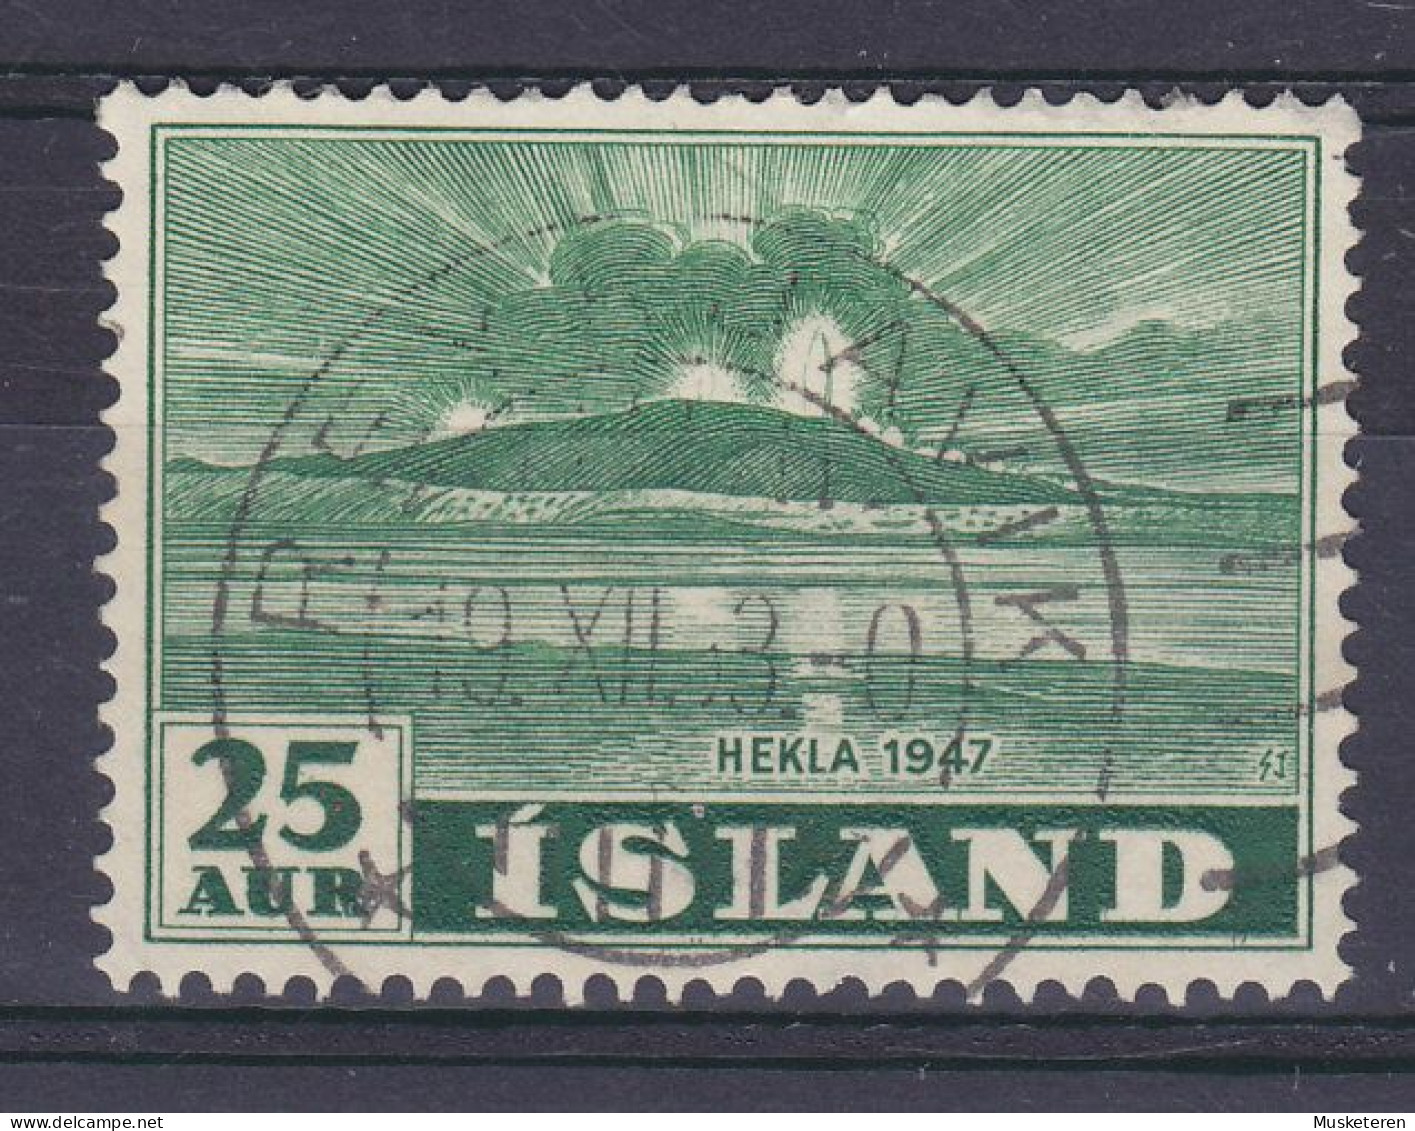 Iceland 1948 Mi. 248, 25 Aur Vulkan Vom Meer Aus Gesehen Deluxe REYKJAVIK Cancel !! - Gebraucht